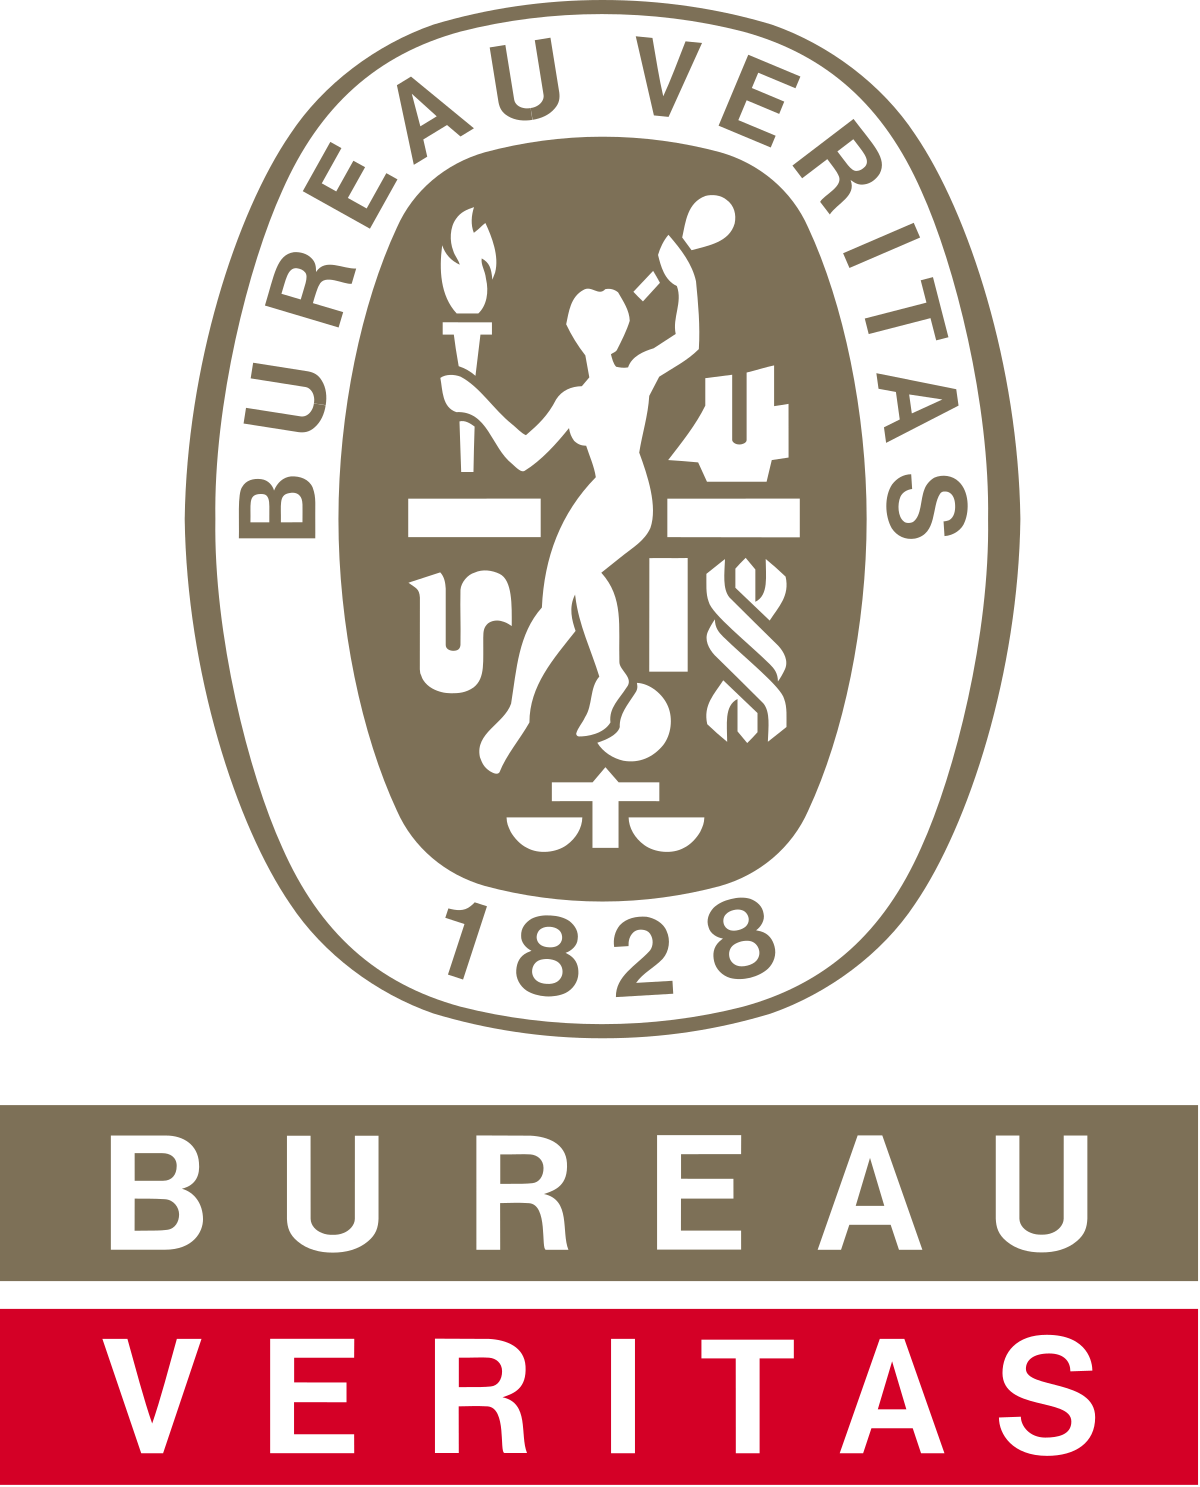 Bureau Veritas Logo - Bureau Veritas